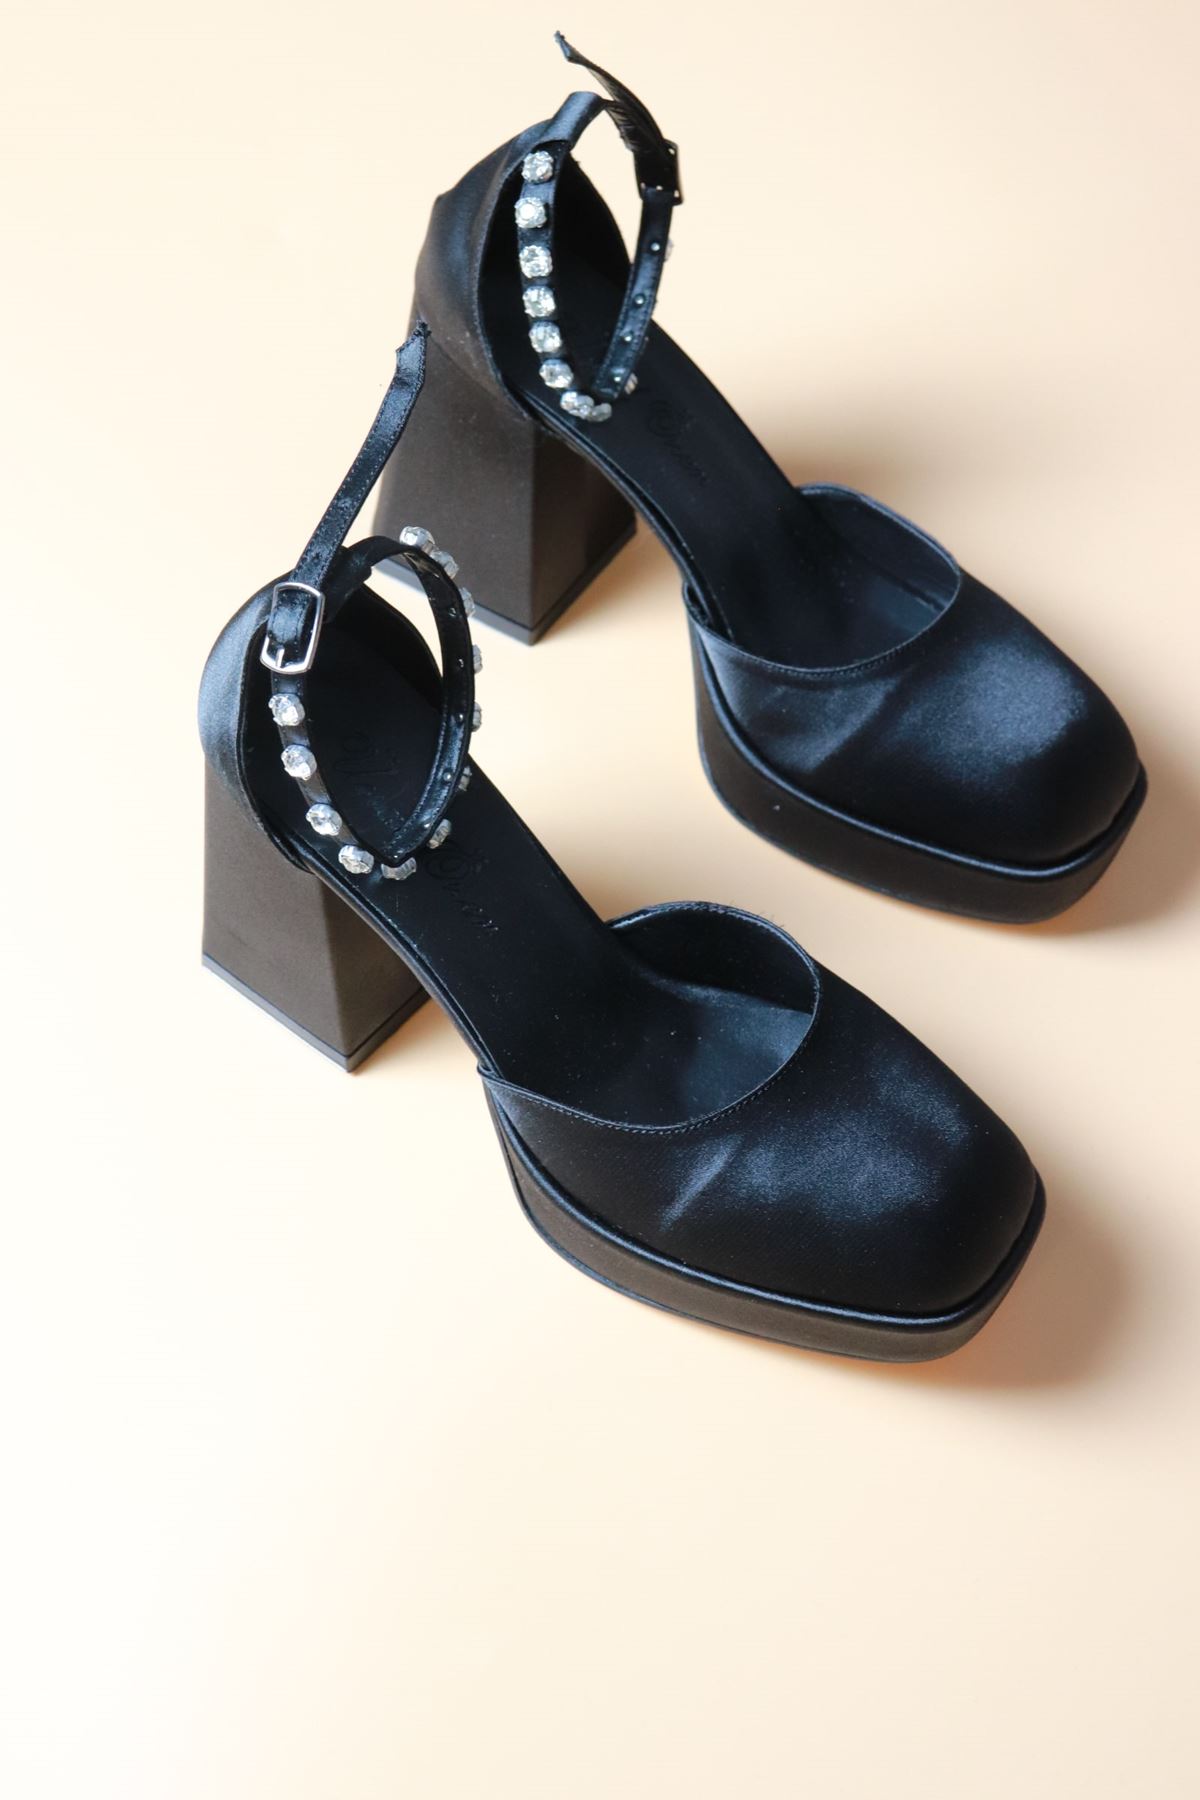 Trendayakkabı - Kalın Topuk Bilekten Bağlı Siyah taş detaylı Saten Kadın Ayakkabı